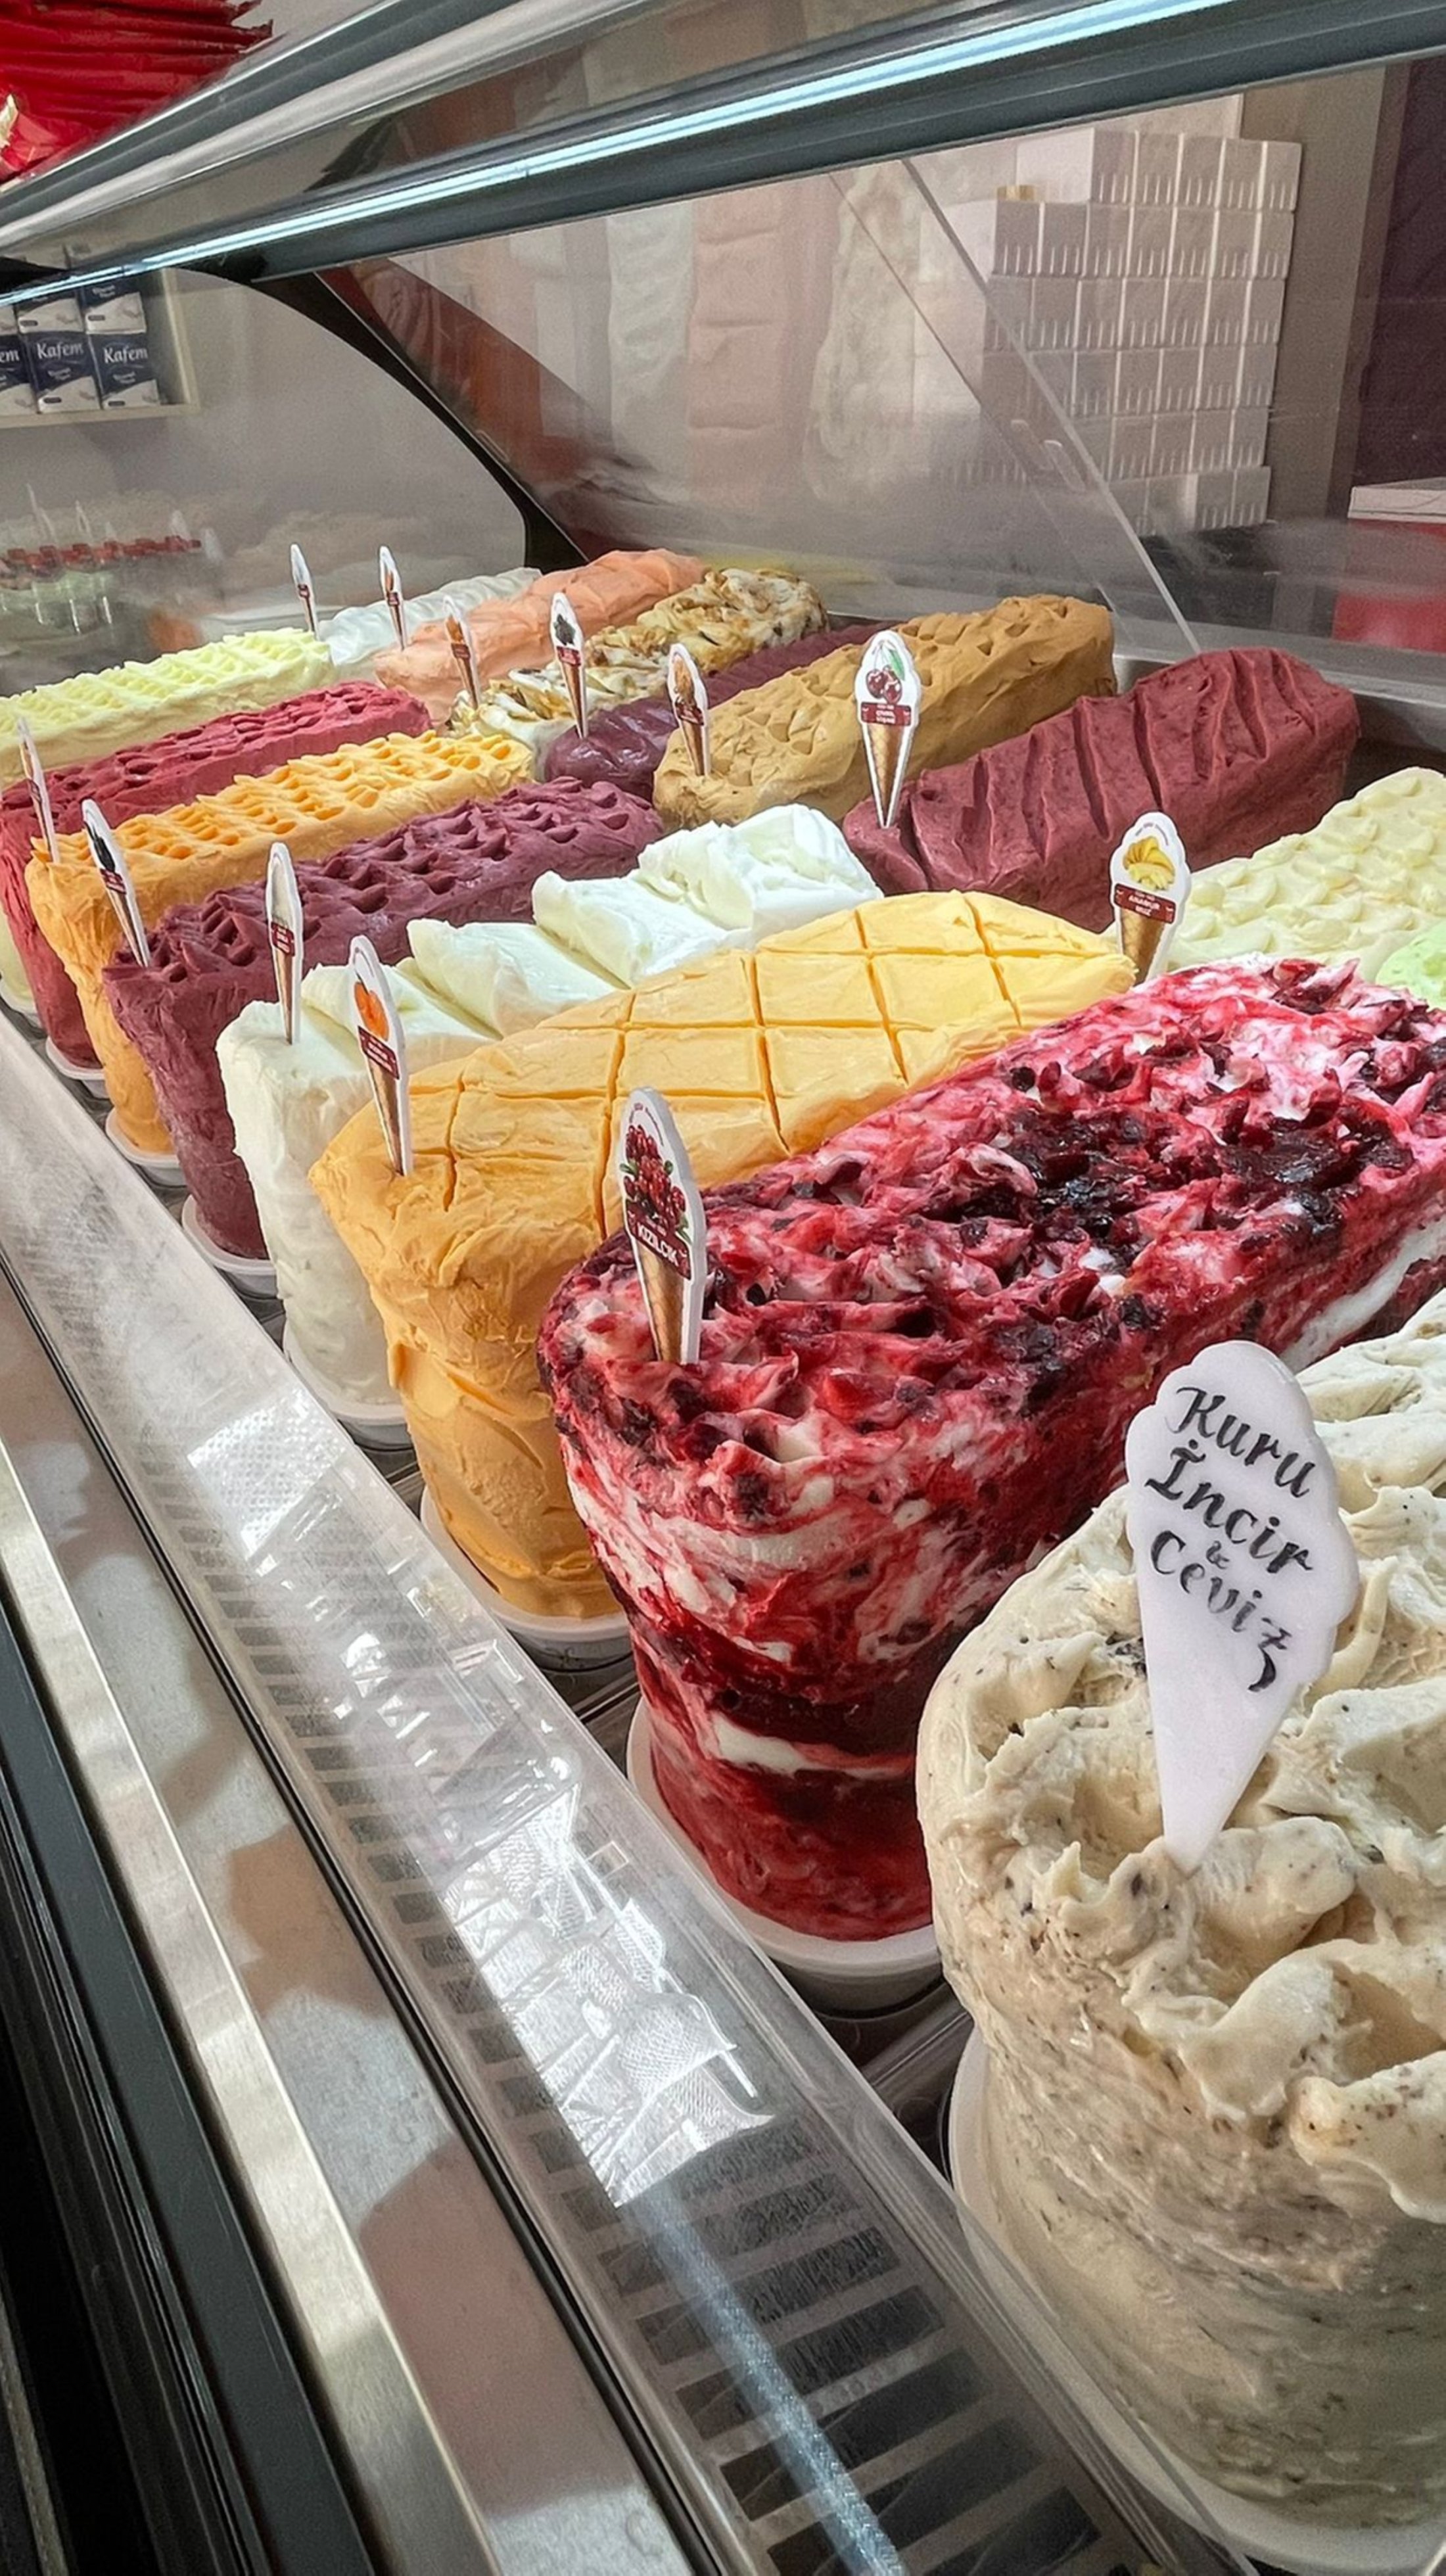 Berbagai rasa es krim di Toko Es Krim Tekin Usta Keçi Sütü di Muğla, Turki.  (Foto milik Leyla Yvonne Ergil)